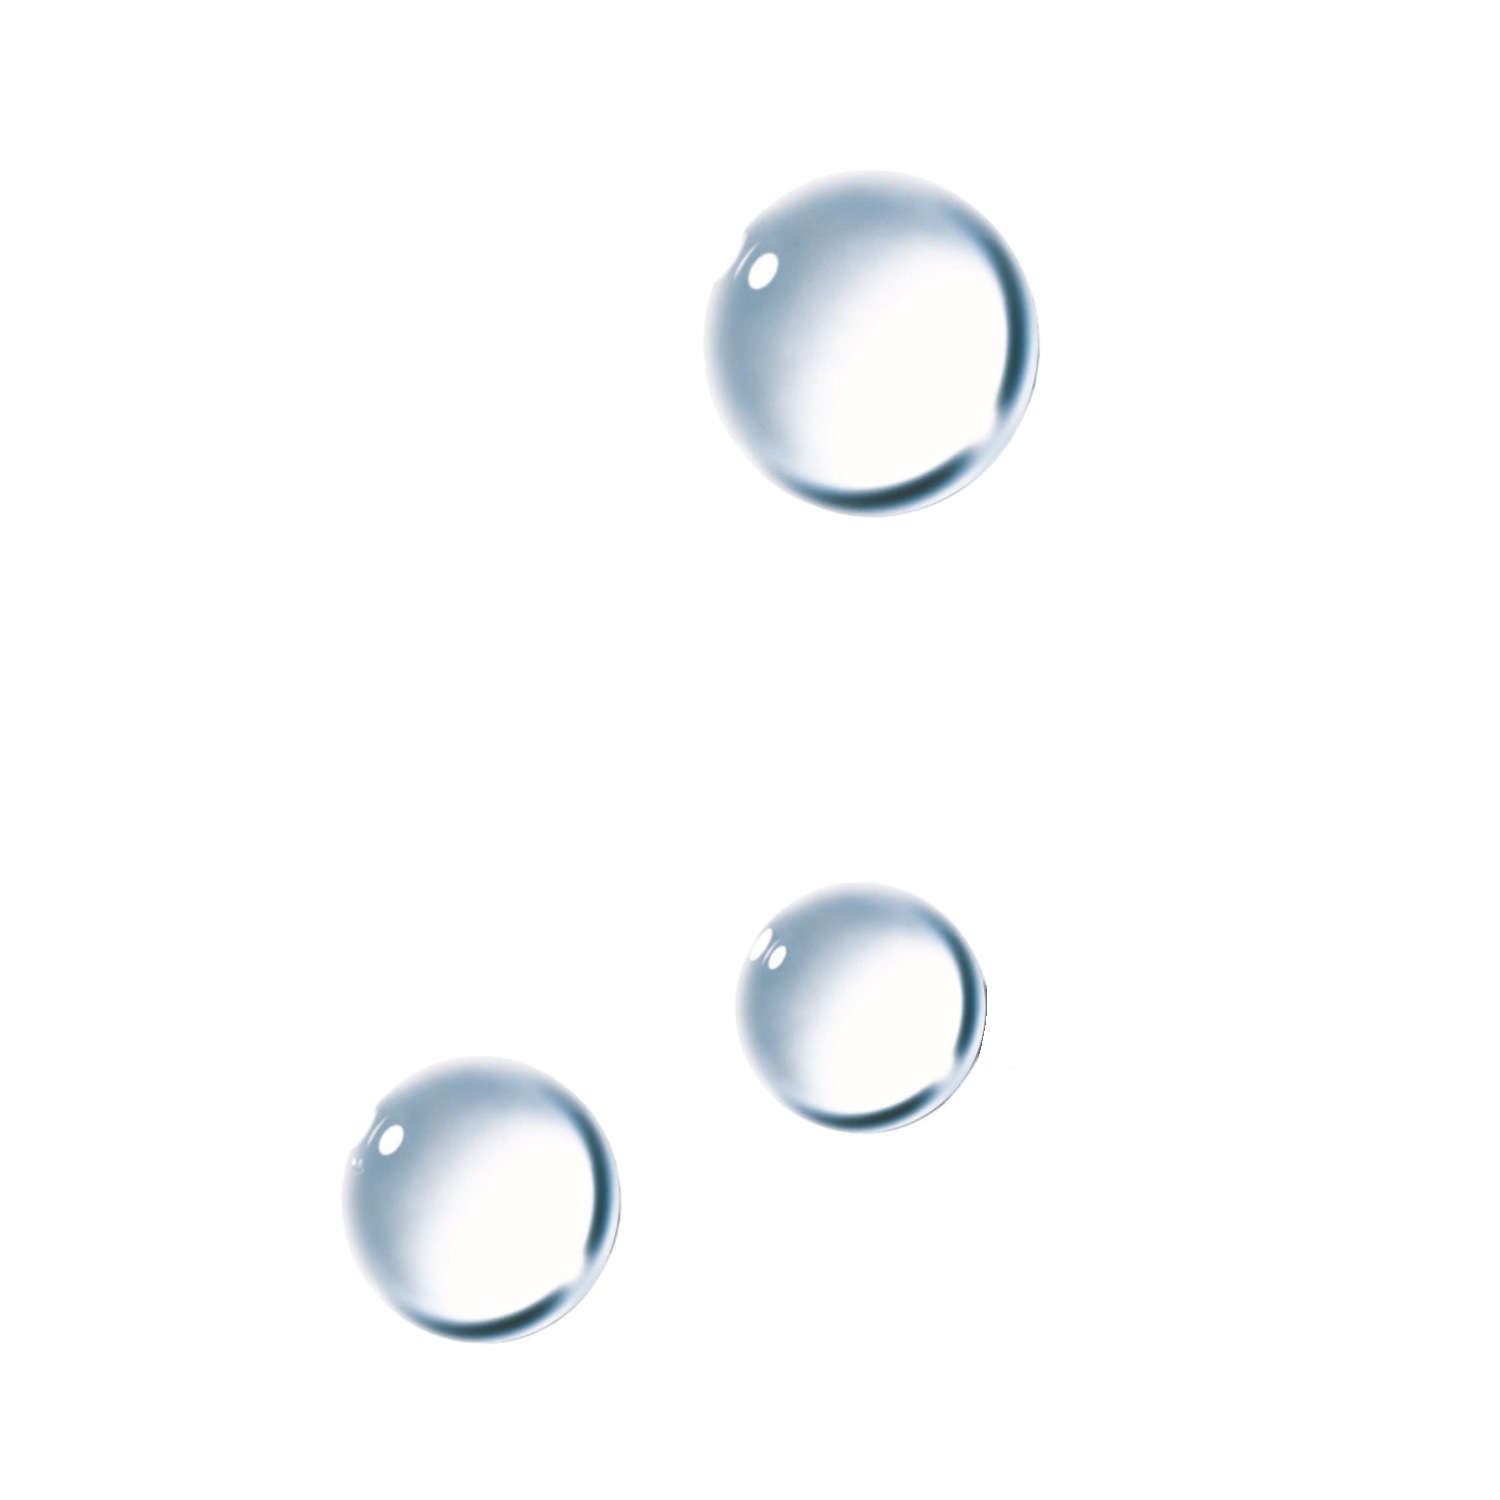 Ля Рош-Позе Ультра вода мицеллярная для чувствительной склонной к аллергии кожи 400мл ля рош позе ультра вода мицеллярная для чувствительной склонной к аллергии кожи 400мл